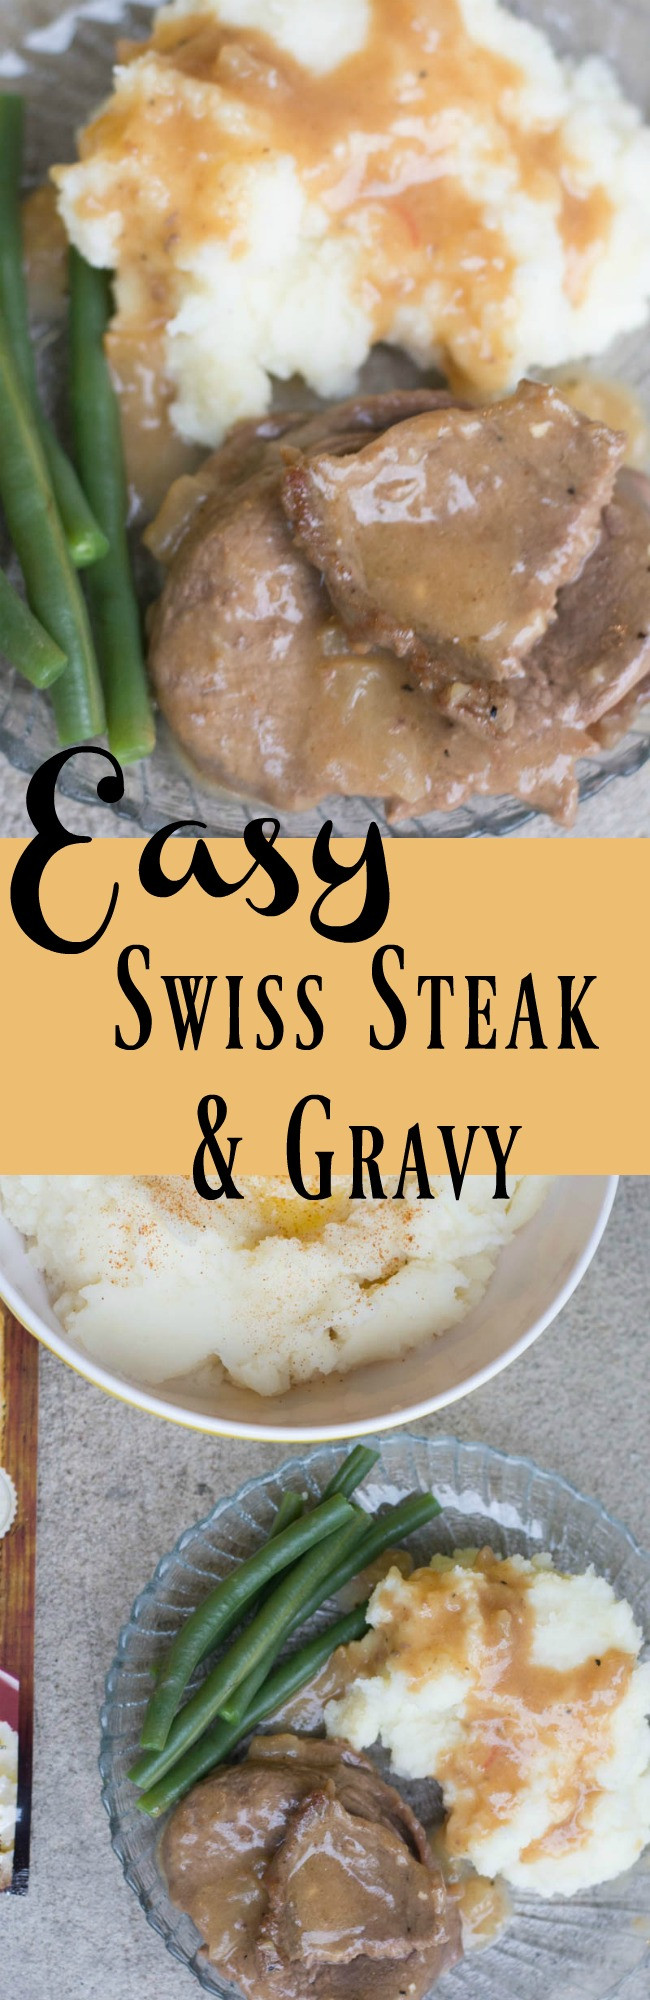 Slow Cooker Round Steak And Gravy
 The BEST Easy Round Steak and Gravy Recipe